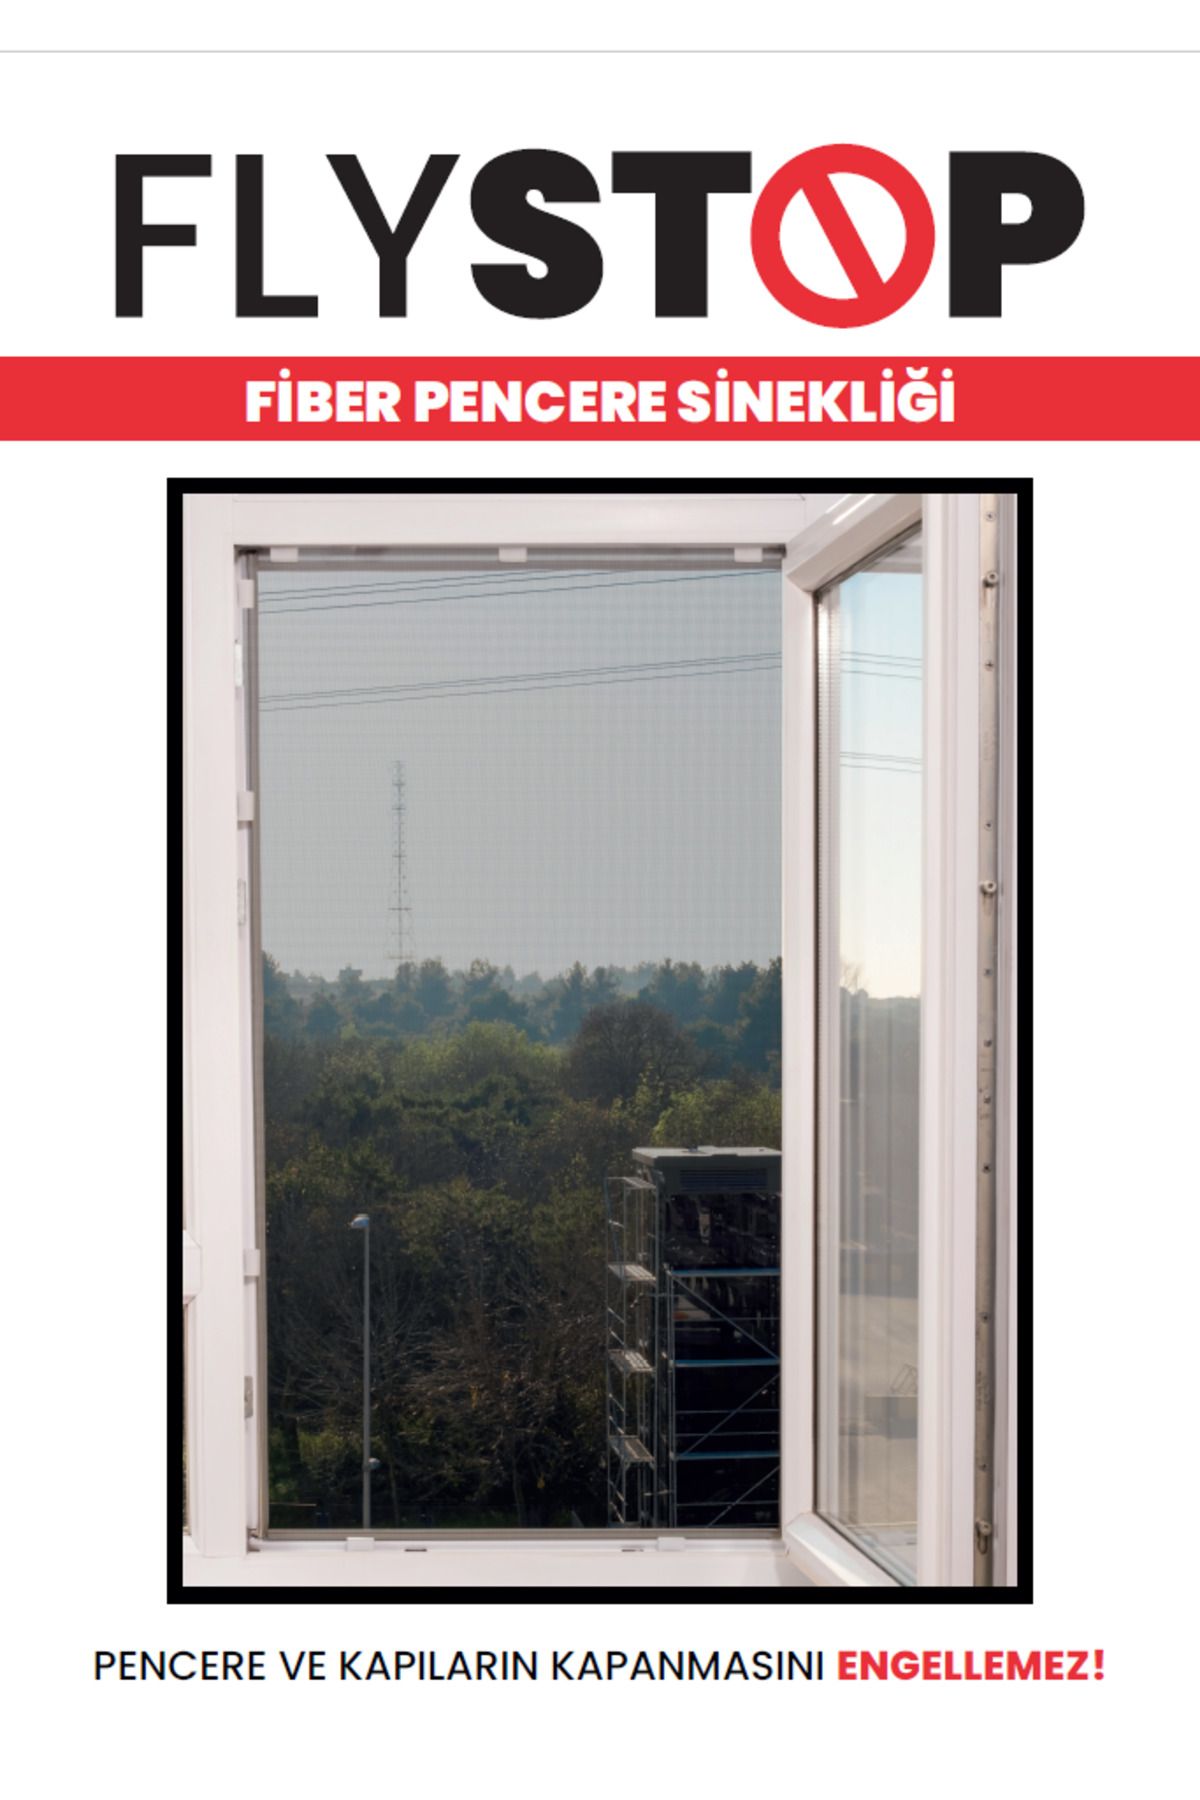 KeskinPazarlama Flystop Aparatlı Fiberglass Pencere Sinekliği 100x150 cm